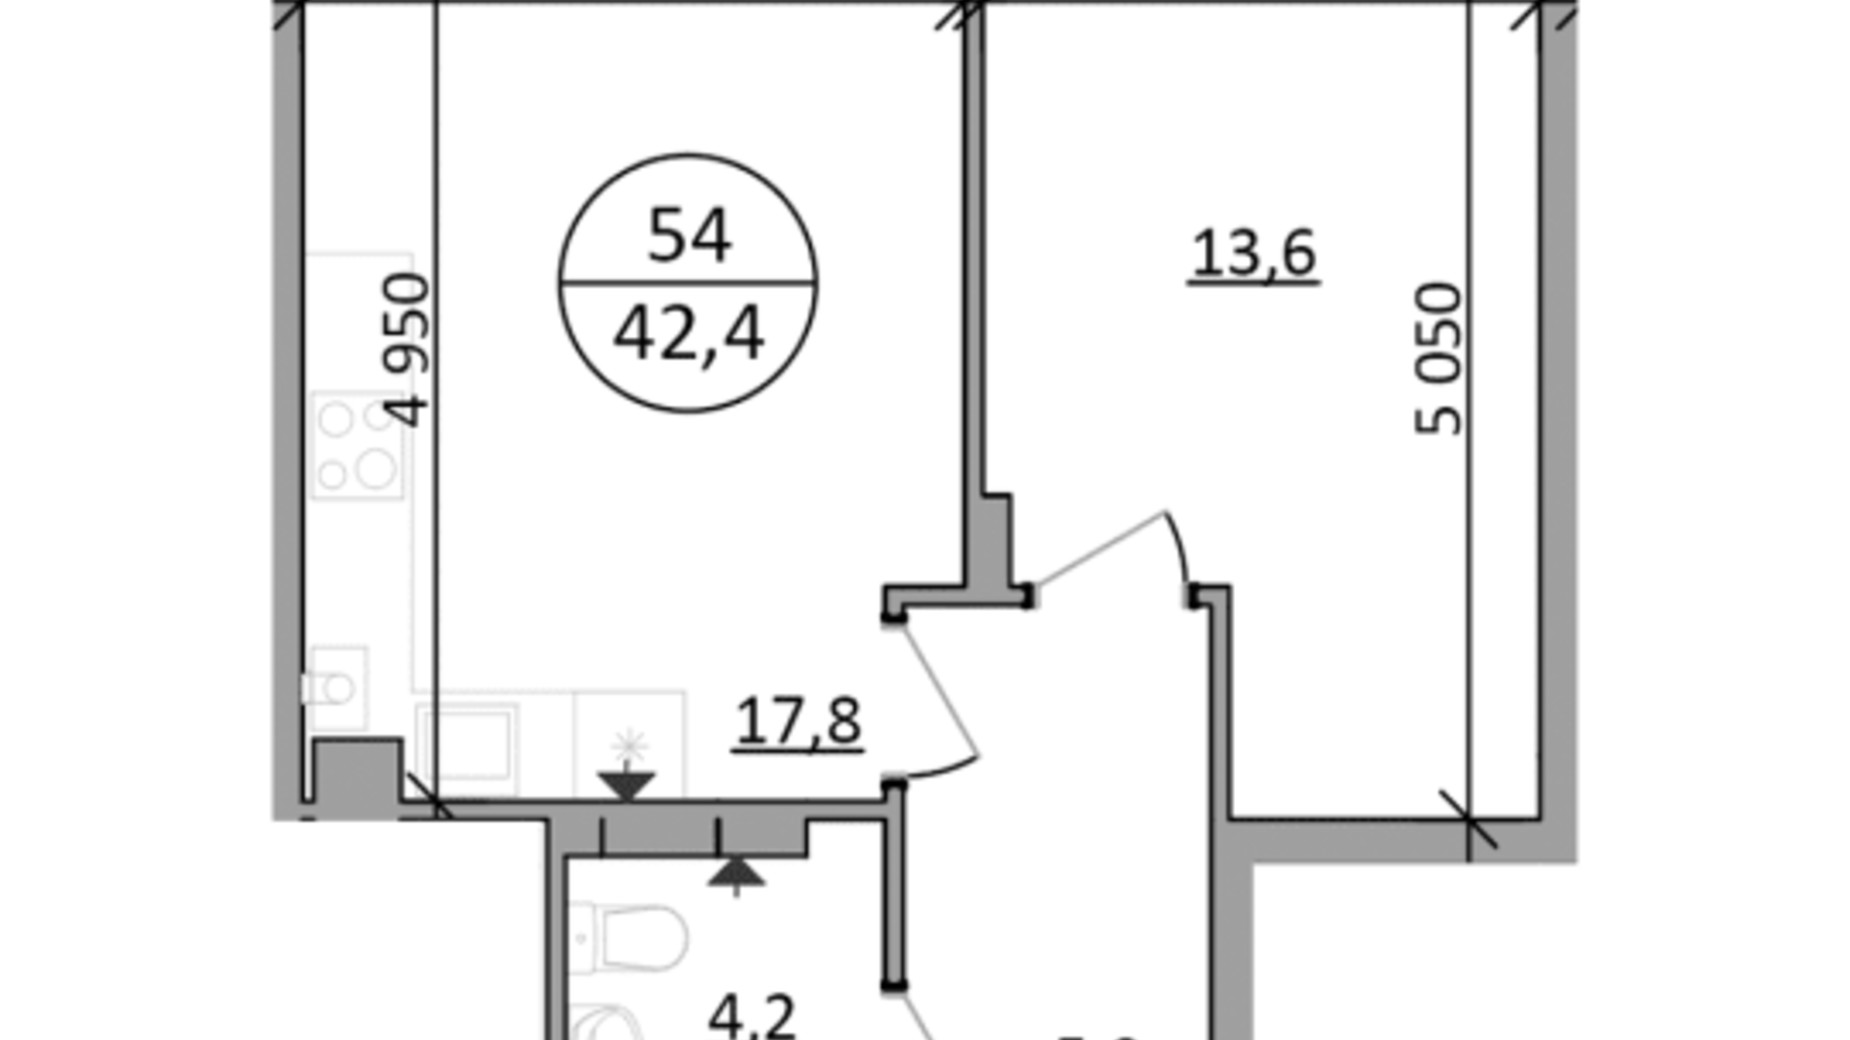 Планування 1-кімнатної квартири в ЖК Грінвуд-2 42.4 м², фото 665408